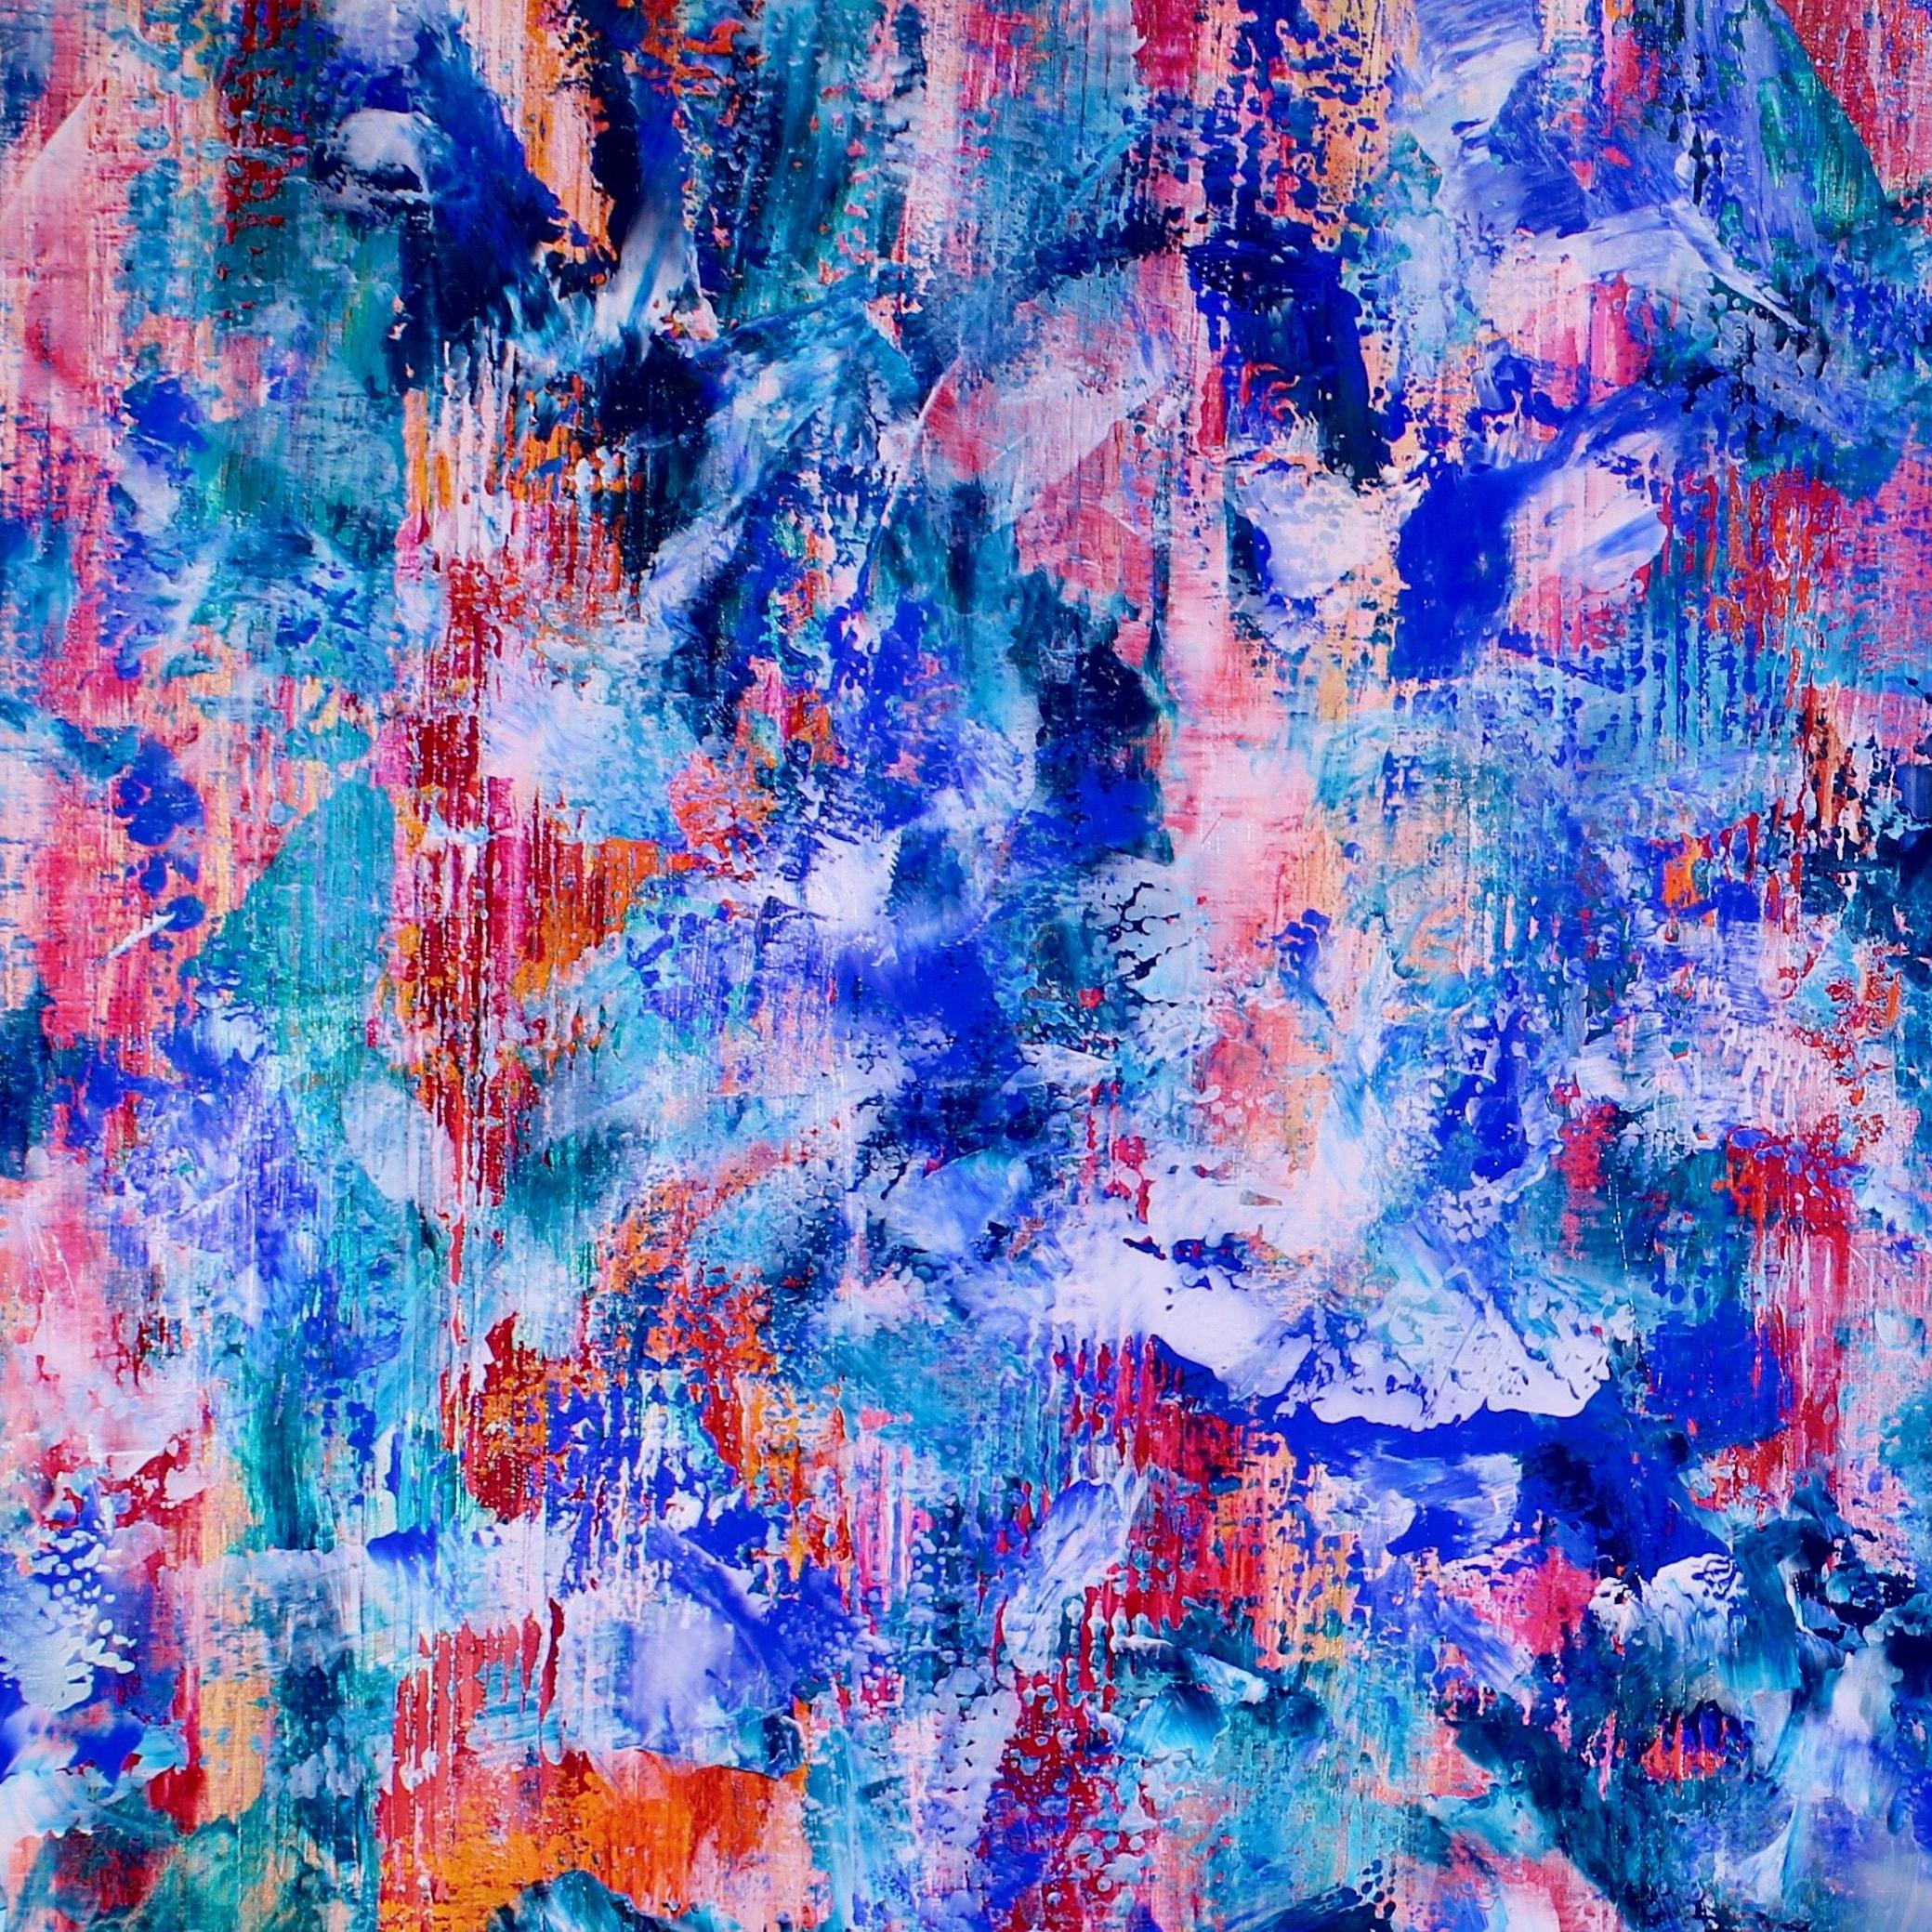 Acryl abstrakte Reise inspiriert Farbfeld orange, lila, rot, blau, schillernde Effekte alle über mit anderen hellen kontrastierenden Farben. Texturiert und geschichtet mit Acrylfarben und Medien. Signiert, fertig zum Aufhängen.     ORIGINALE FEINE